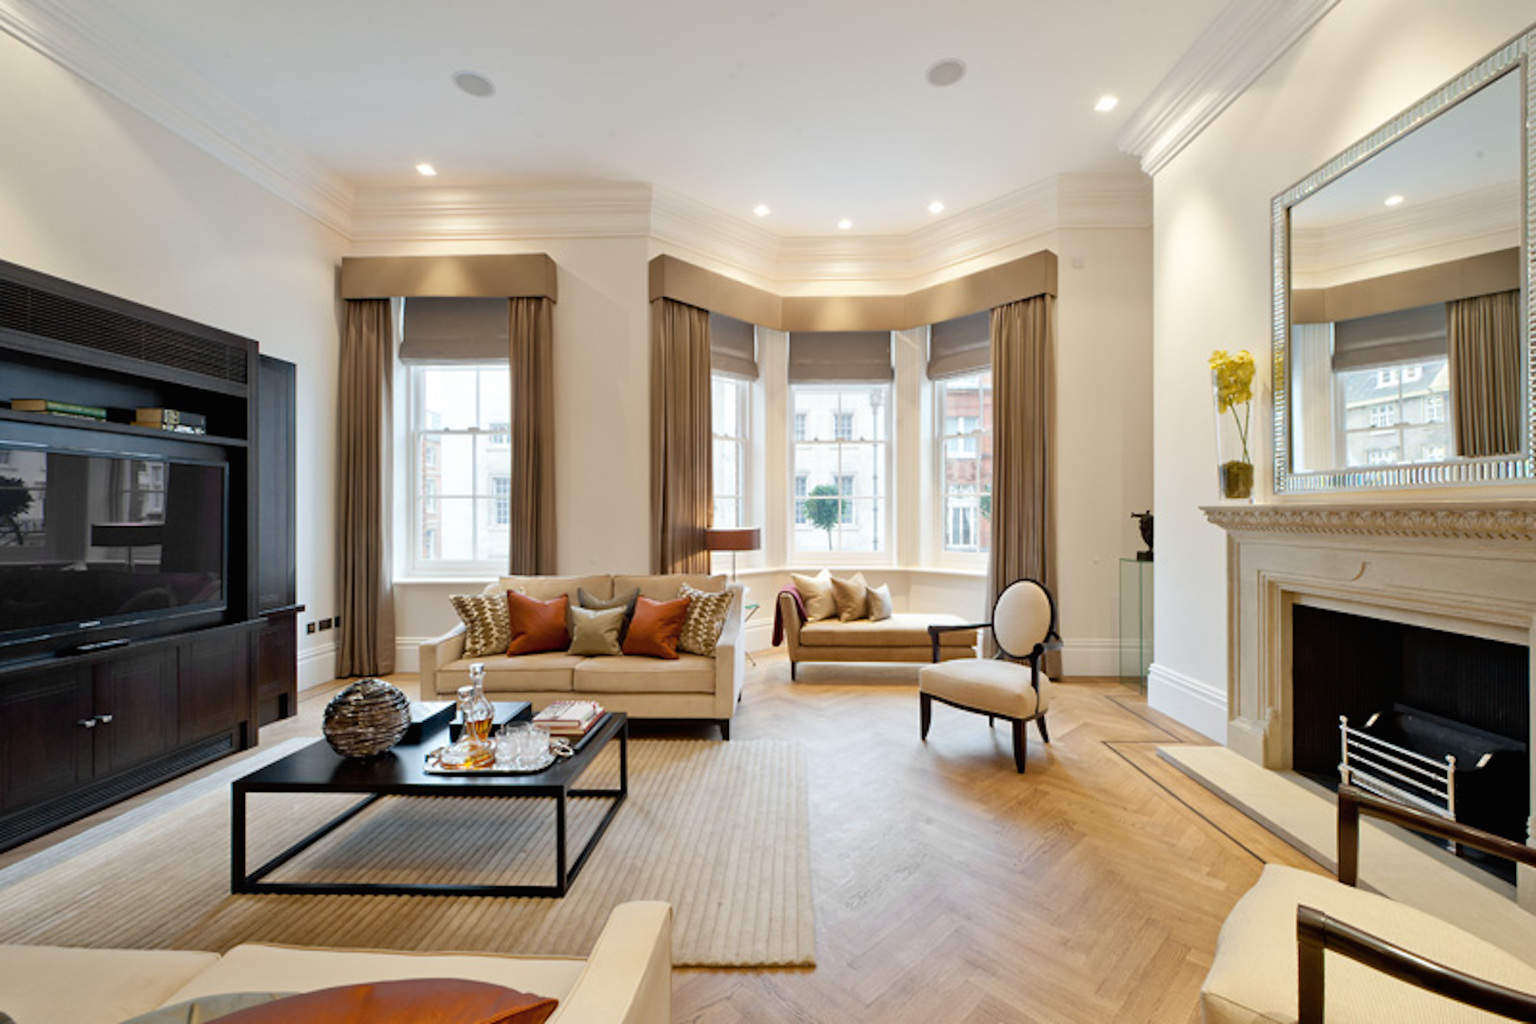 Affordable interior designer London